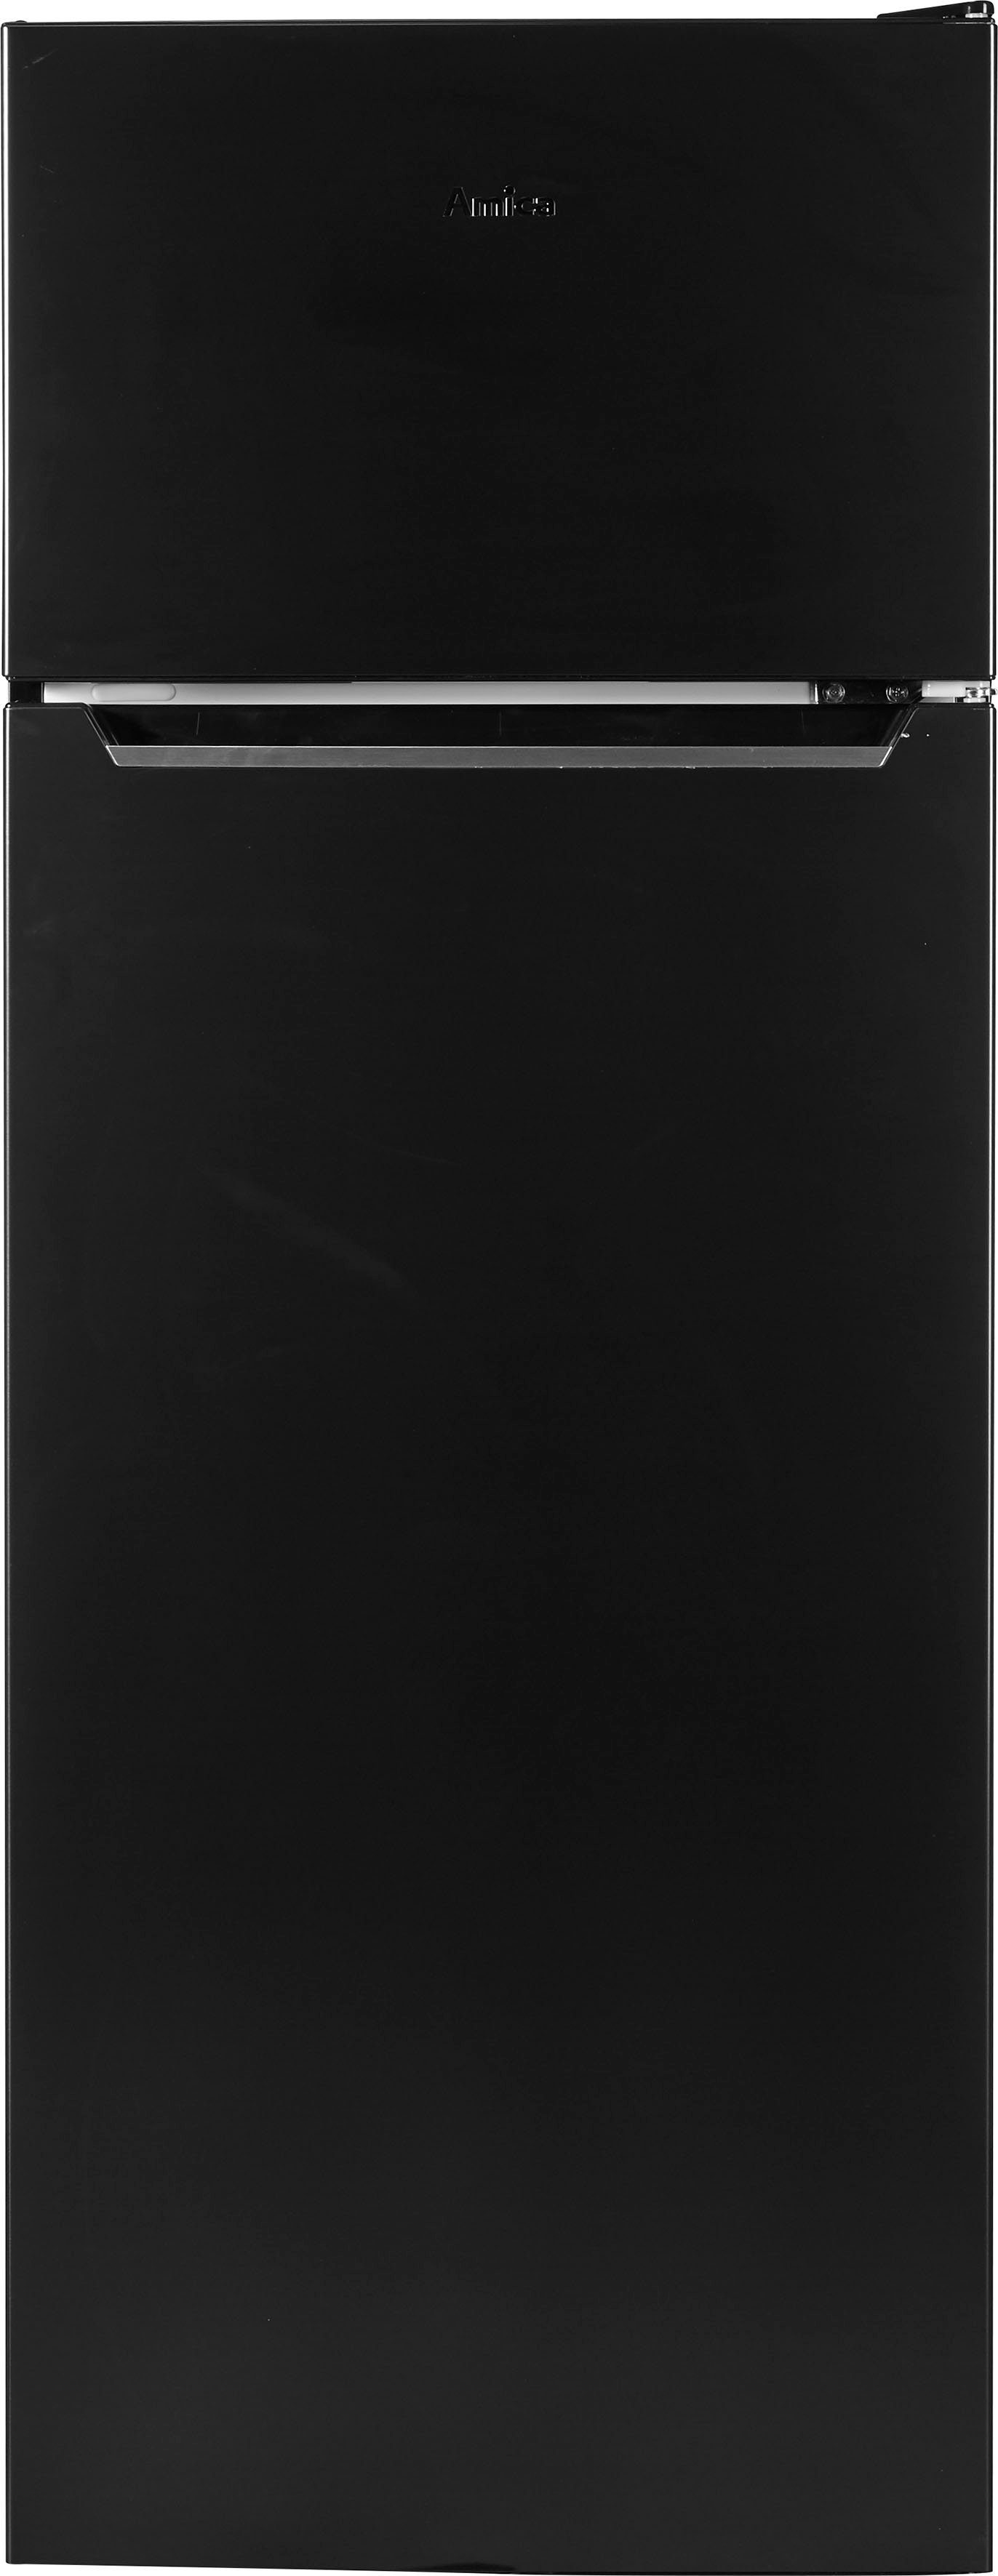 Amica Kühl-/Gefrierkombination DT cm cm schwarzes 54 144 160 S, Edelstahl hoch, breit 374